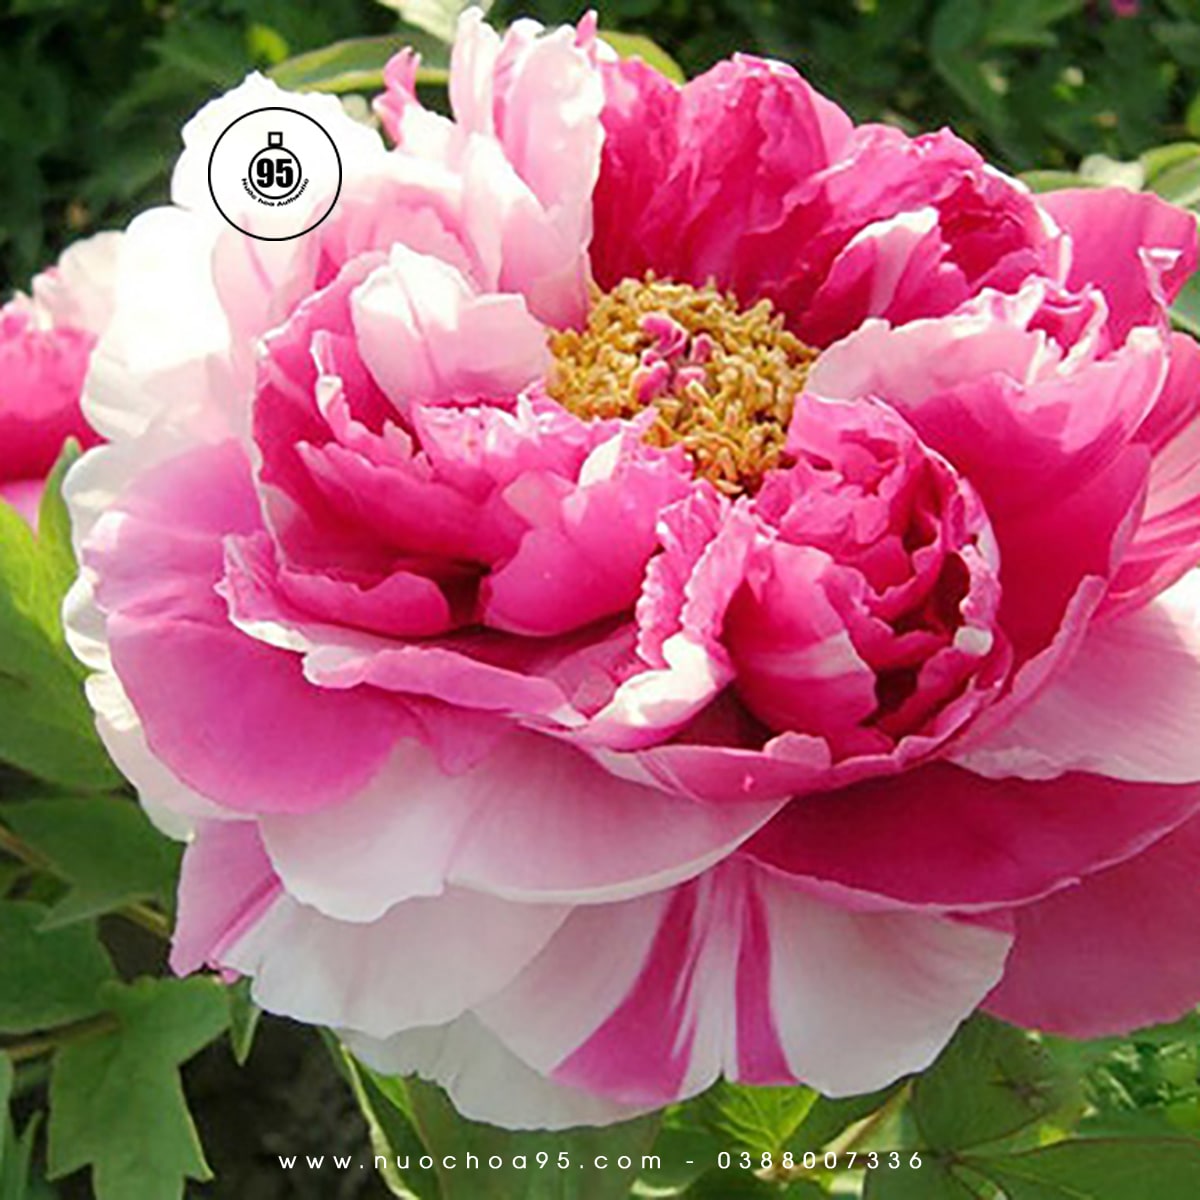 Hoa mẫu đơn hồng Trung Quốc (Chinese Pink Peony)